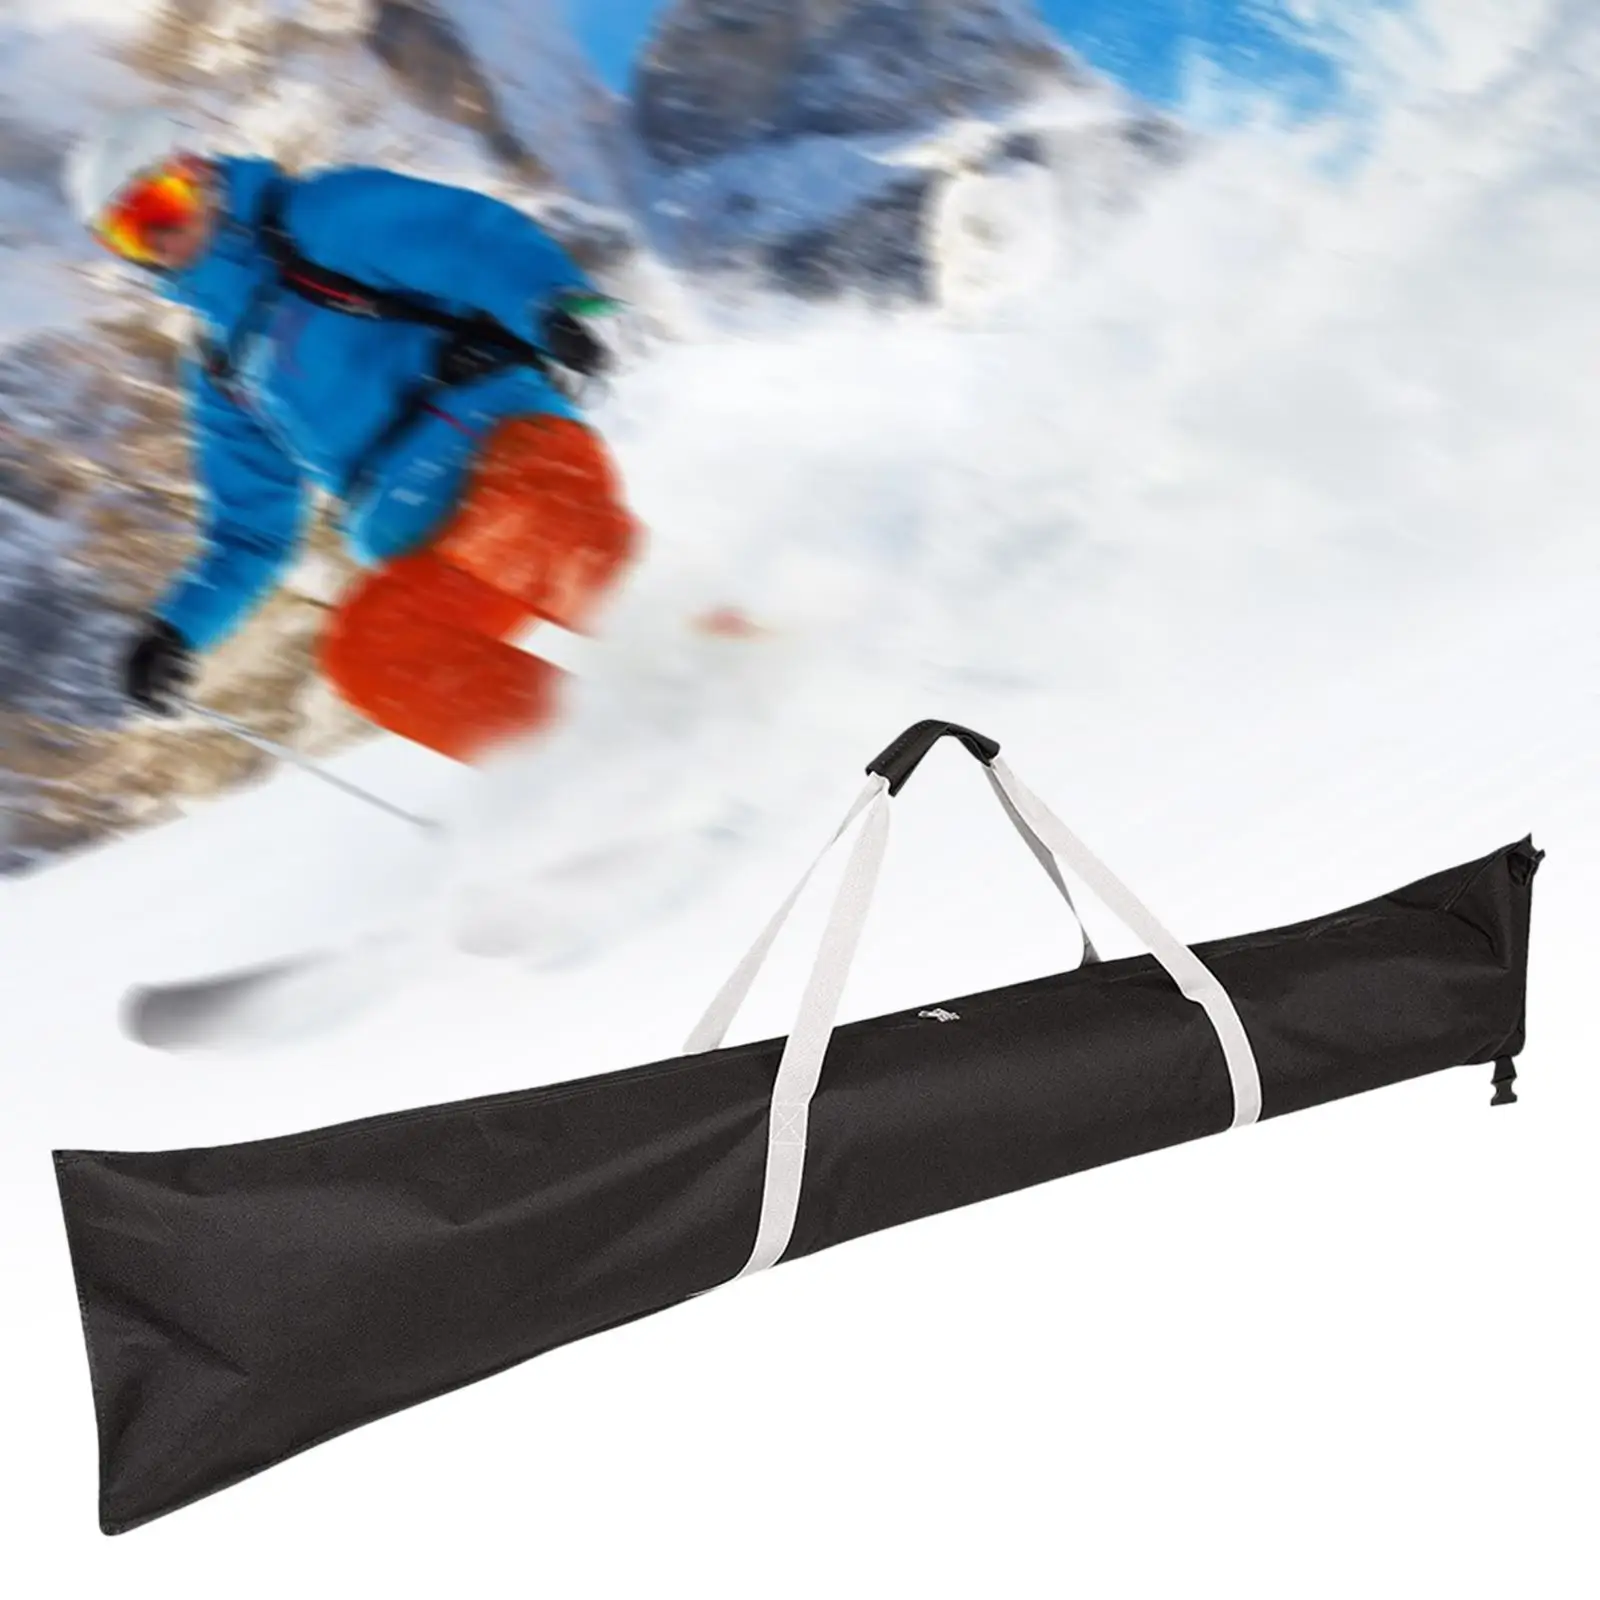 Ski Bag Protective Portable Snow Travel Transport Adjustable Snowboards Poles Bag Ski Travel Bag for Skiing Gloves Outdoor